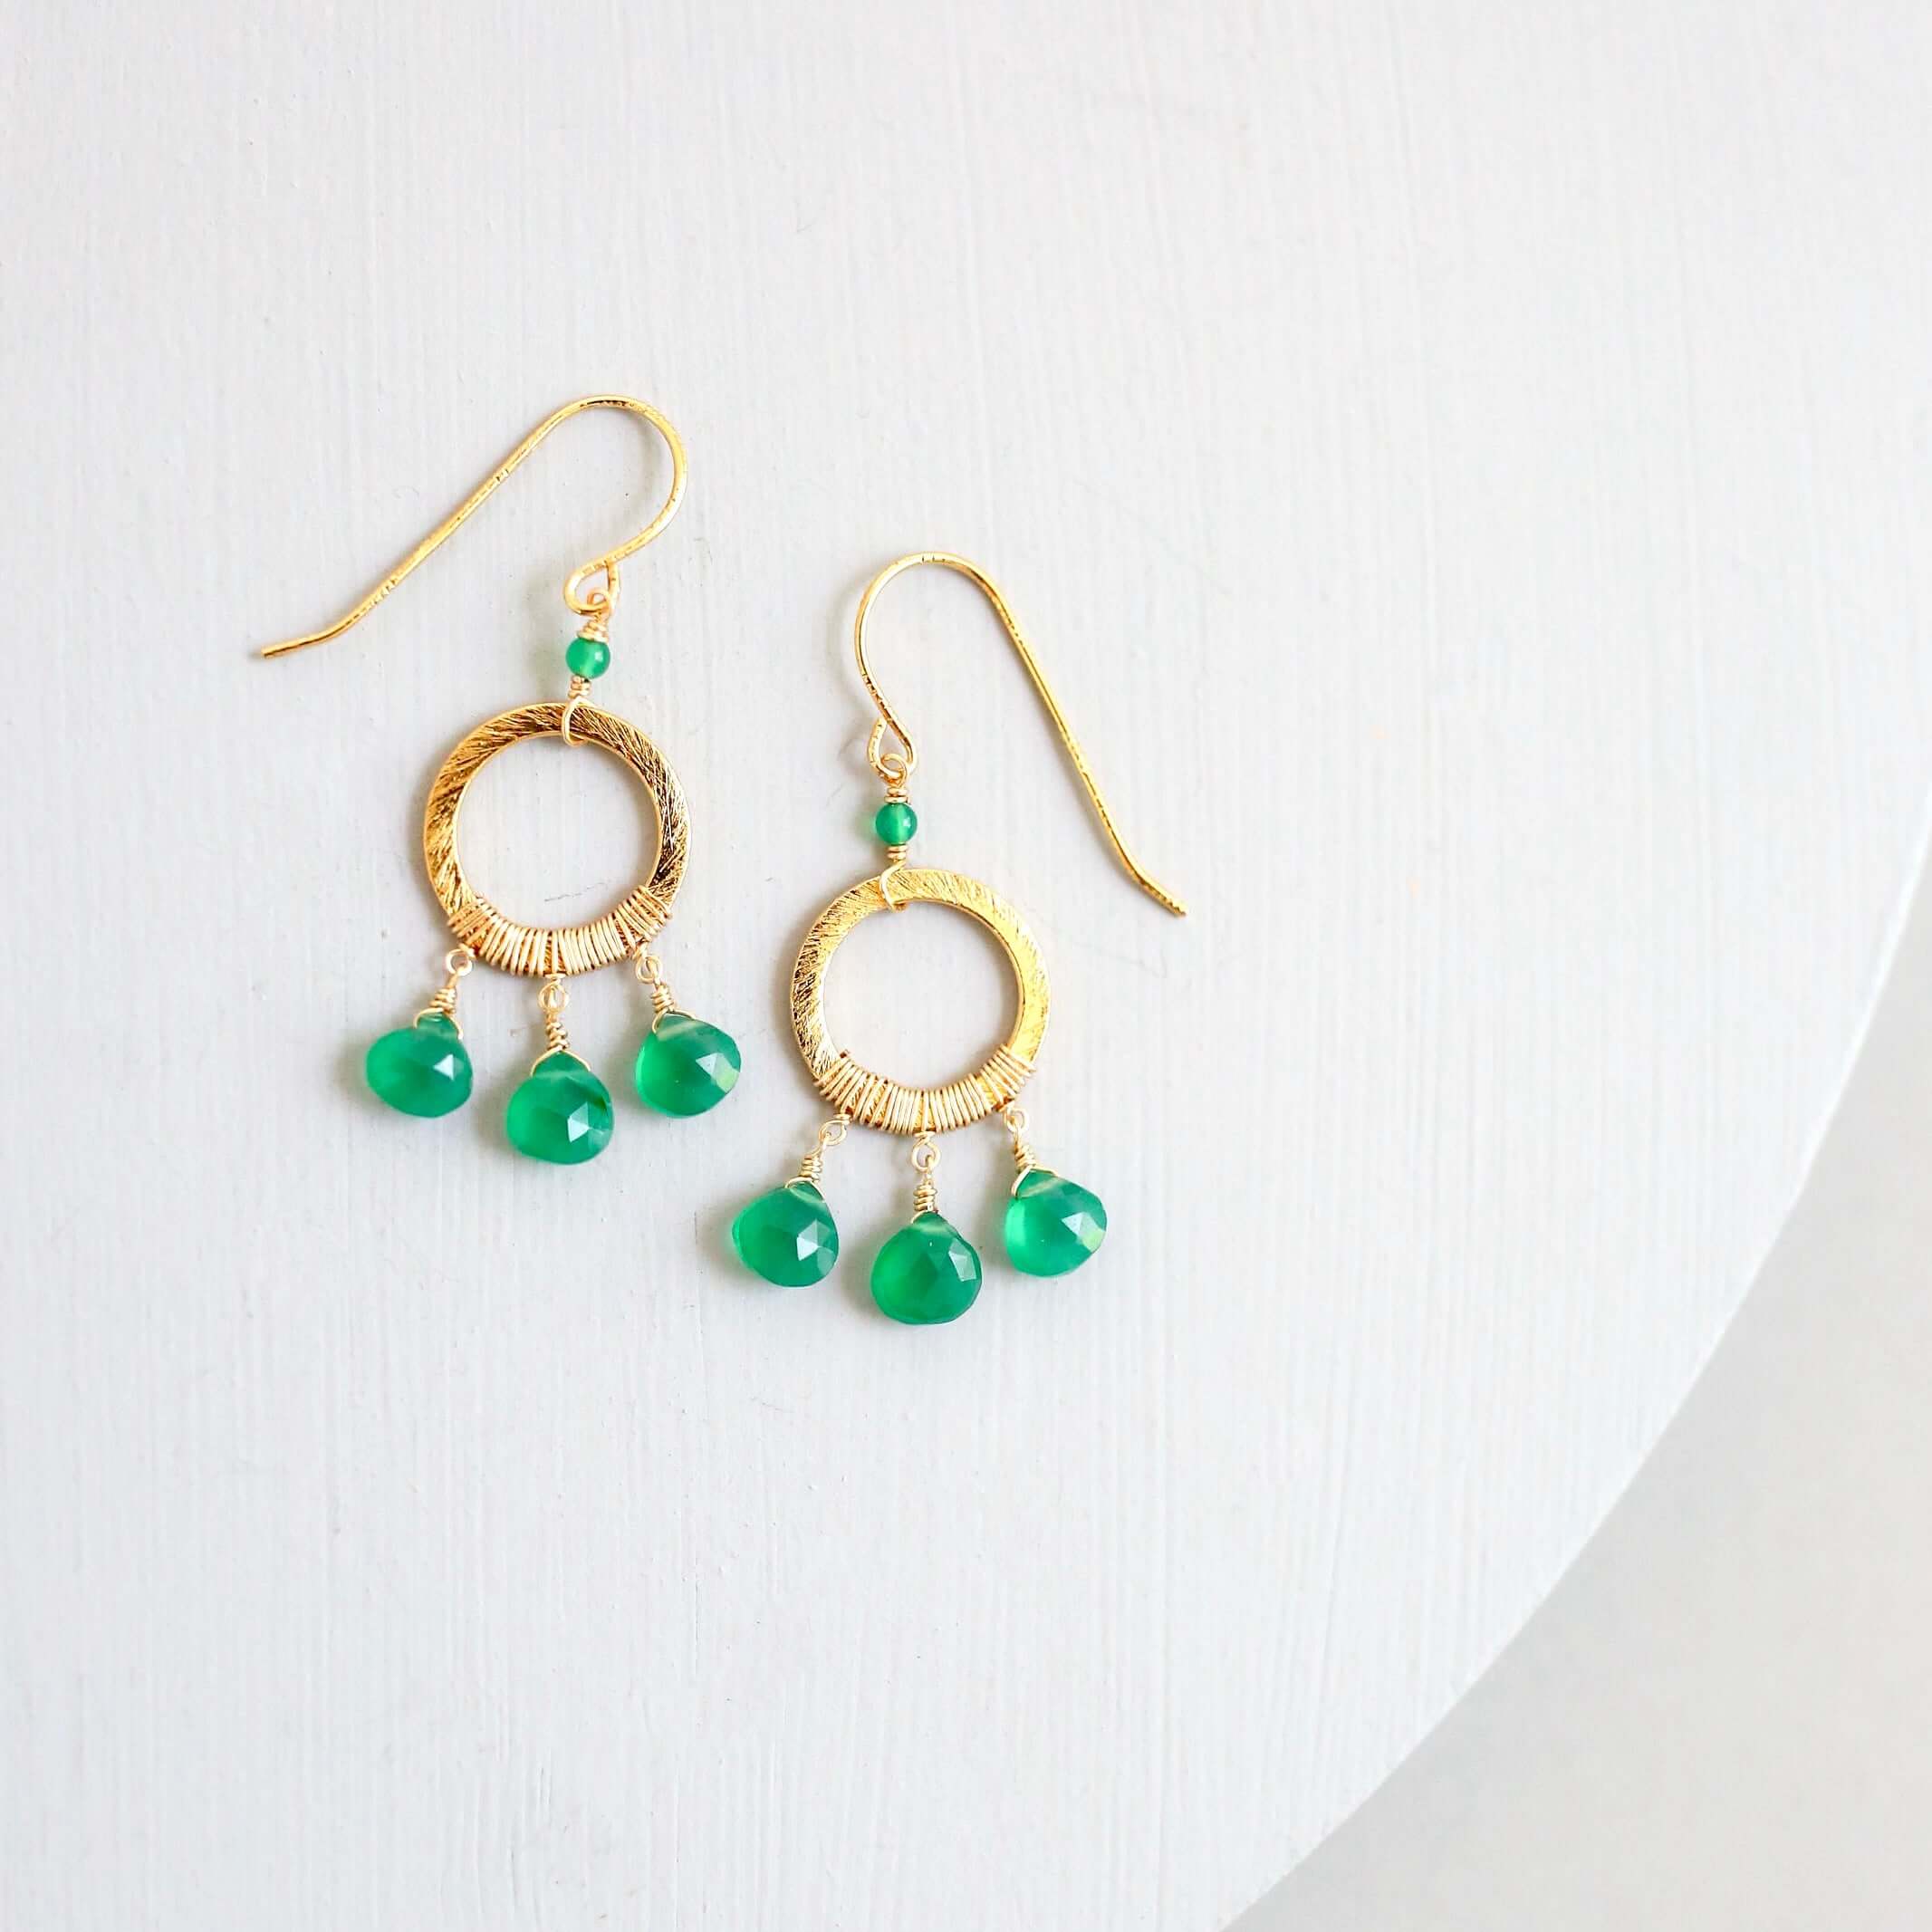 Boho Mini Earrings with Green Onyx Gemstones